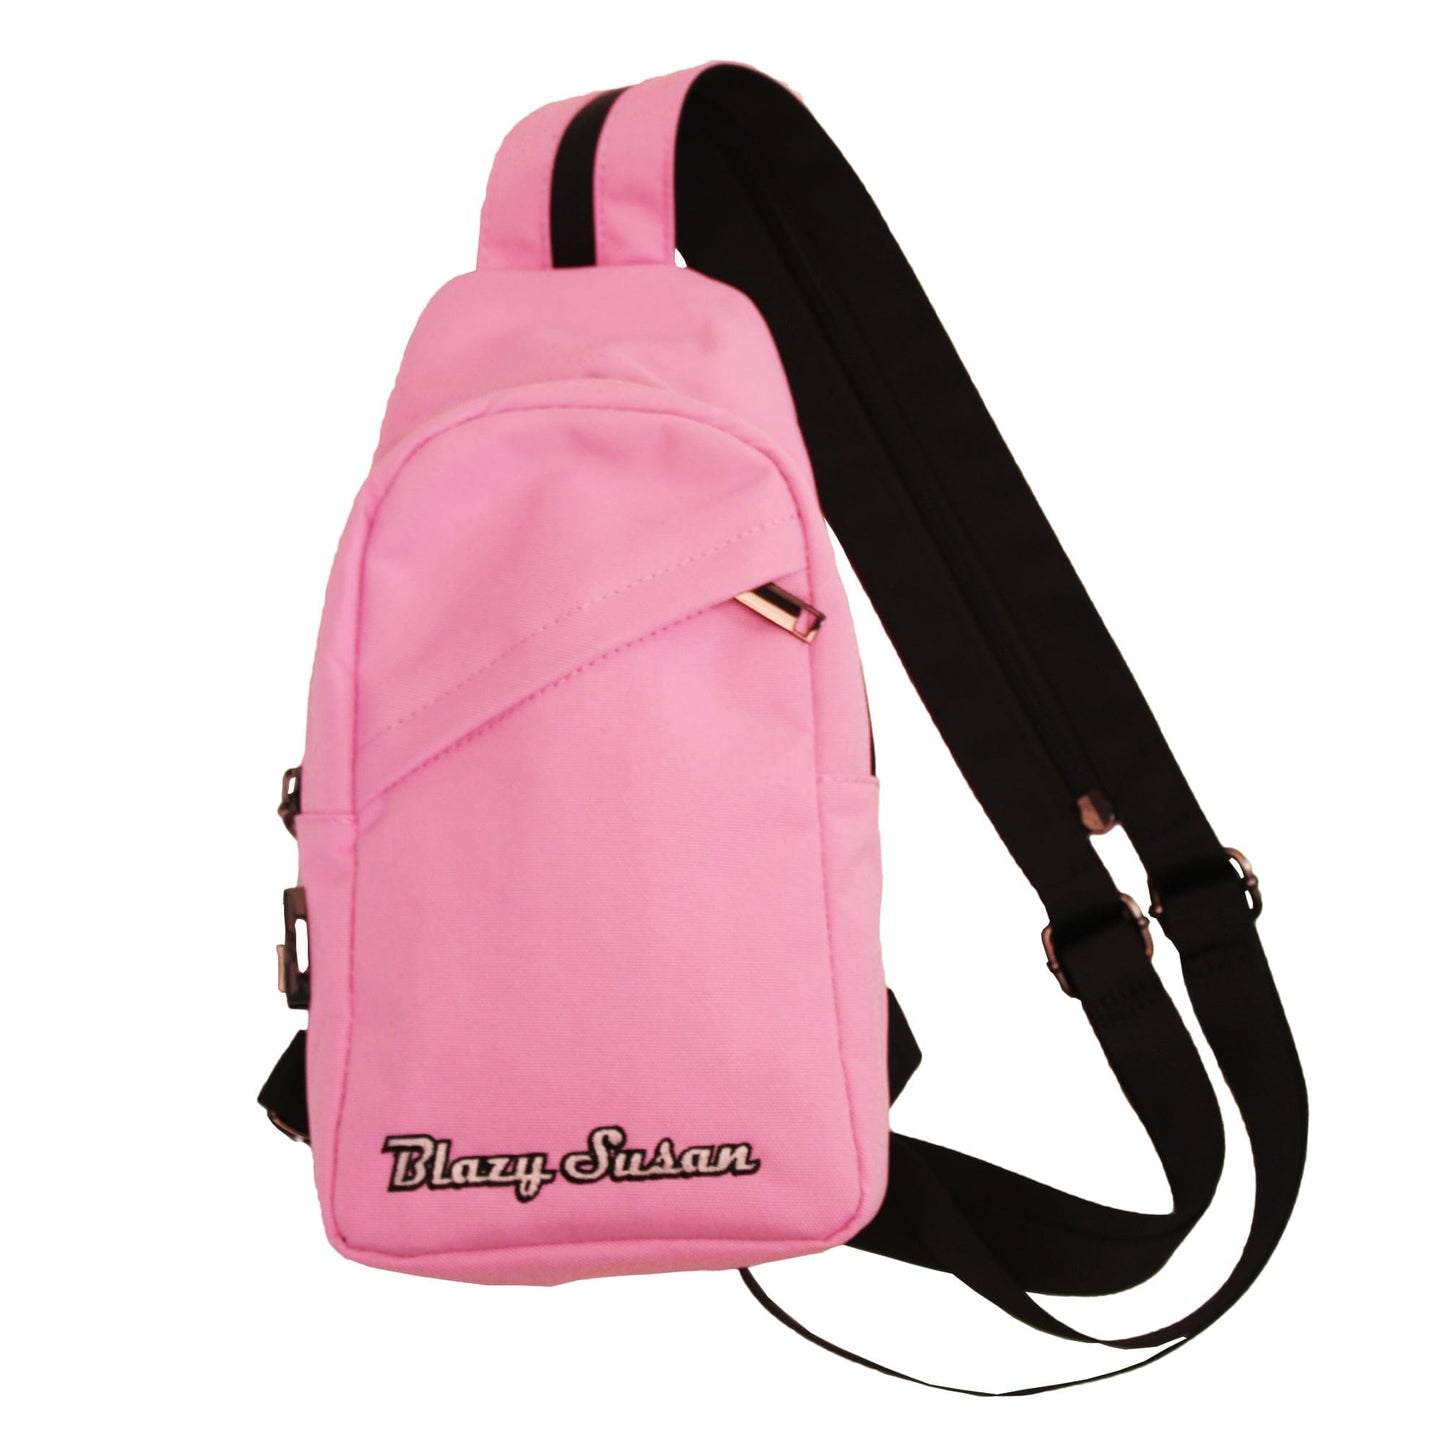 Blazy Susan Backpacks Over-The-Shoulder Bag - Pink Blazy Susan Backpacks